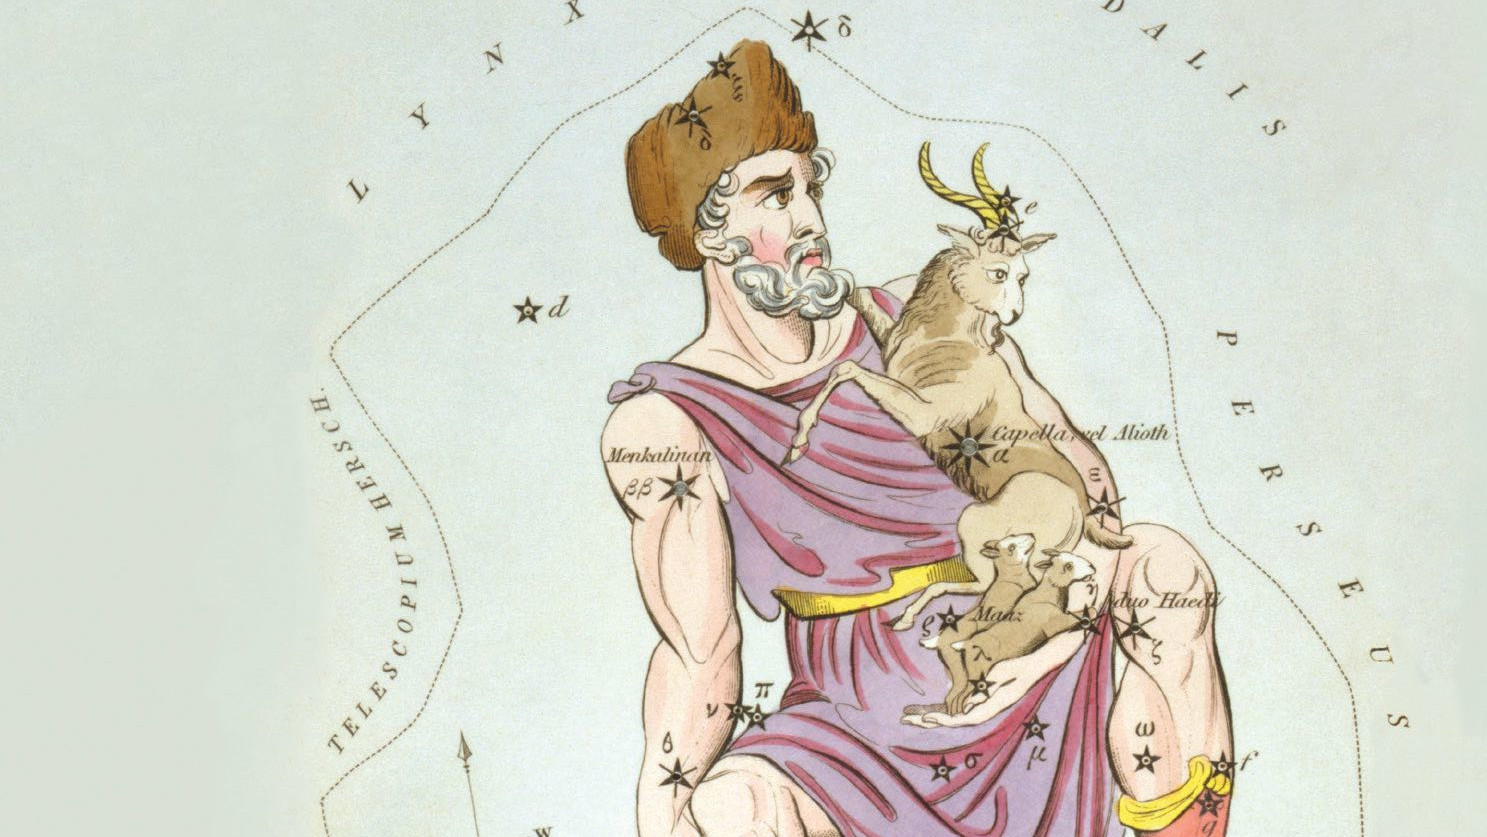 Chociaż nazwa Auriga sugeruje, że jest to rydwan lub woźnica, grafiki przedstawiają raczej pasterza kóz.